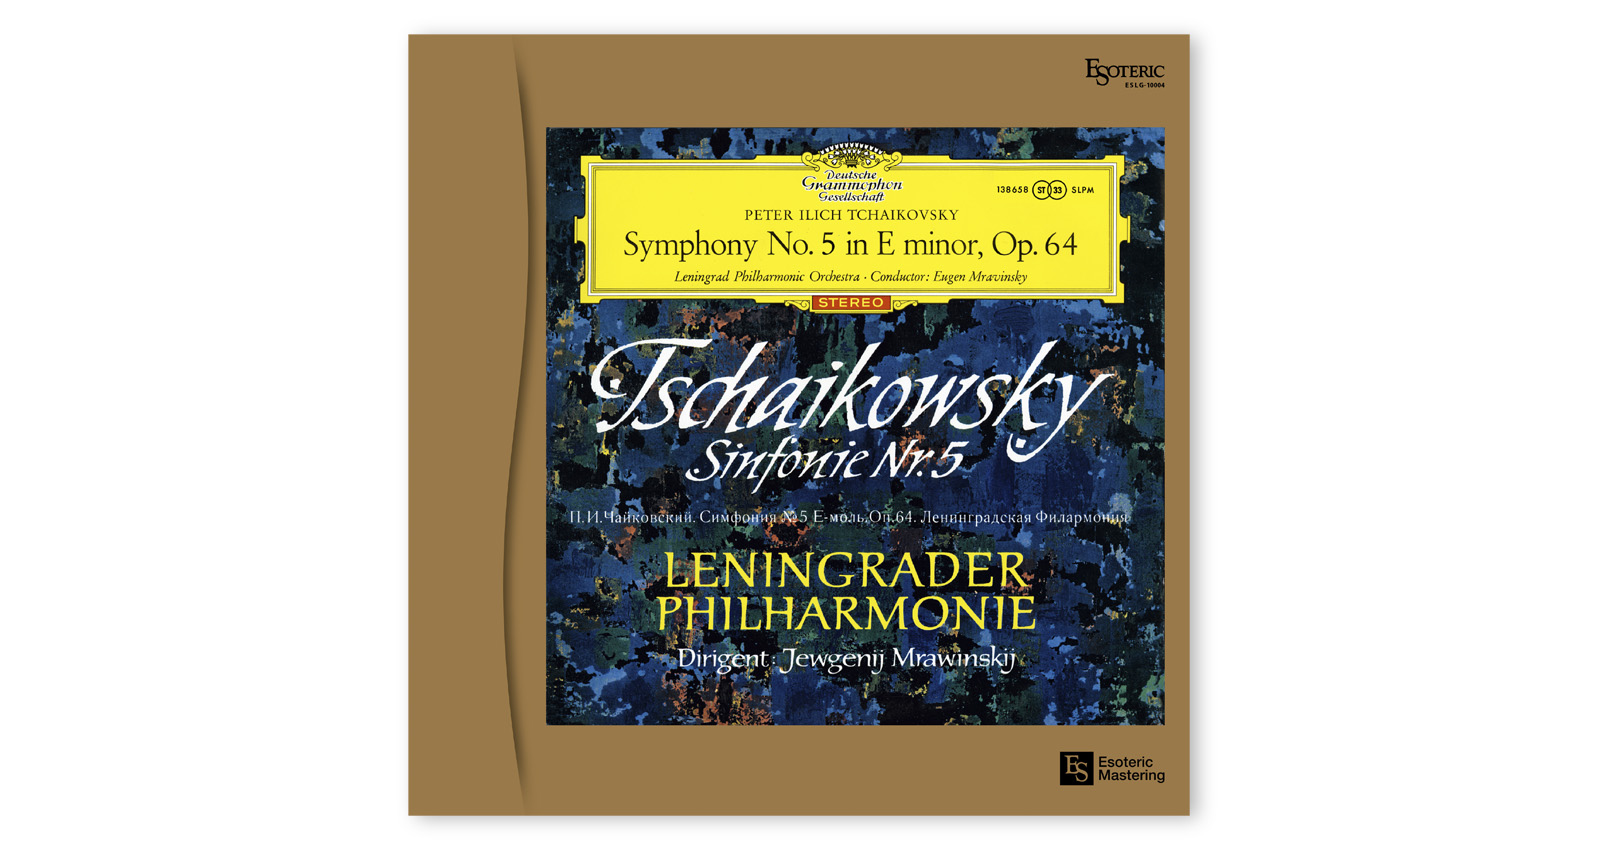 Pyotr Ilyich Tchaikovsky: Symphony No.5, Yevgeny Mravinsky/Leningrad Philharmonie - LP 180g Vinyl, Limited, Remastered